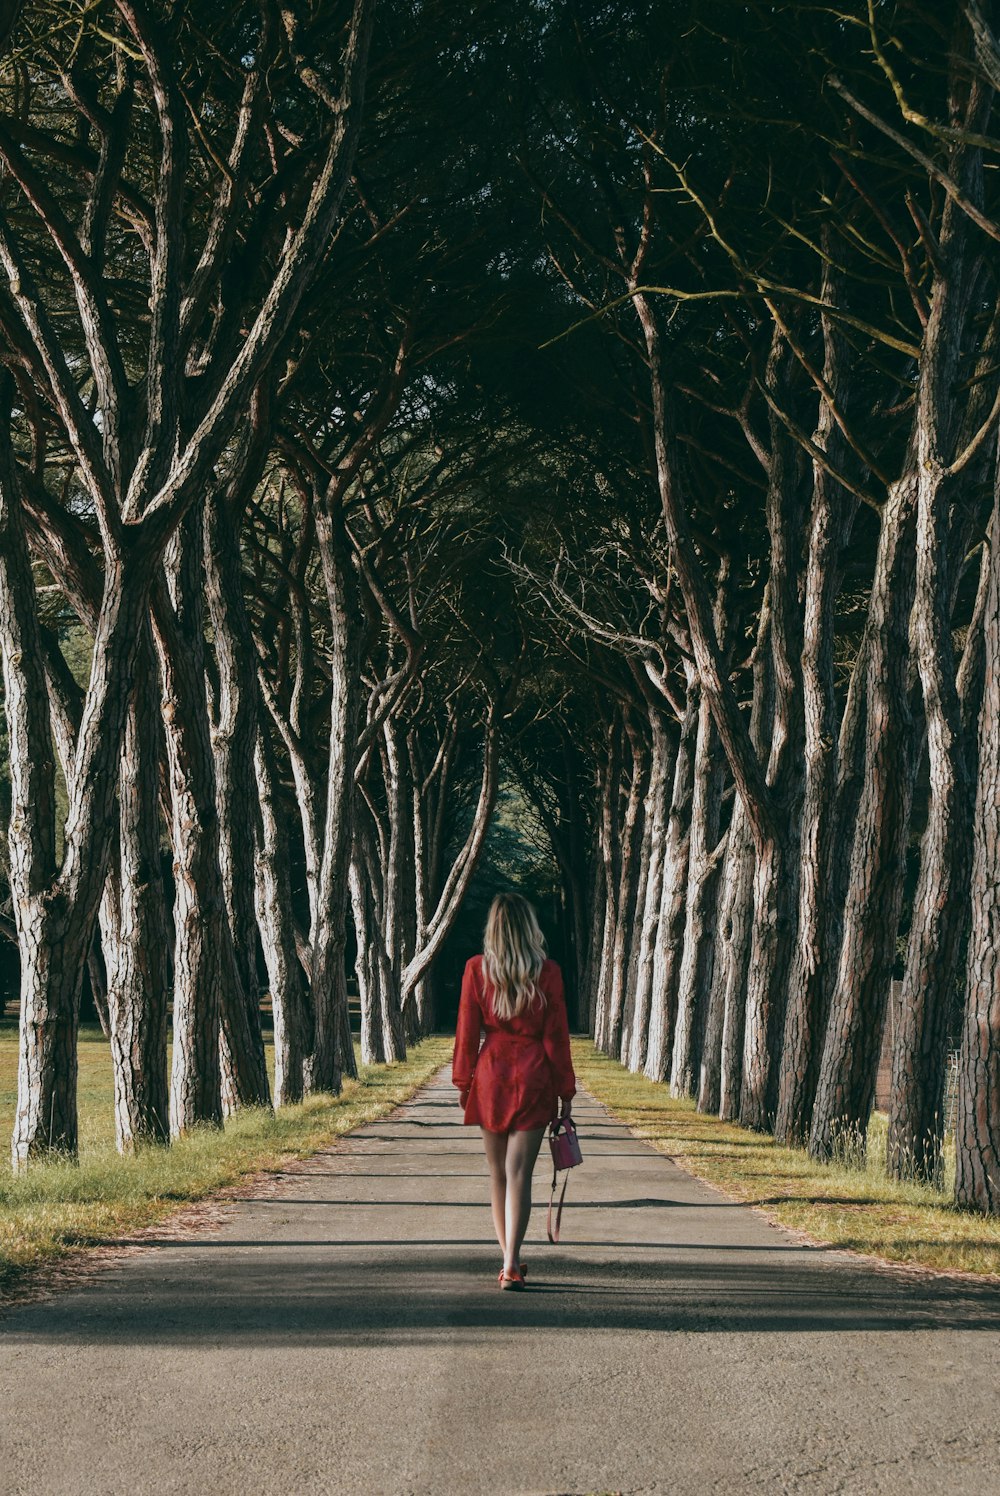 빨간 드레스를 입은 여자가 나무가 늘어선 길을 걷고 있다